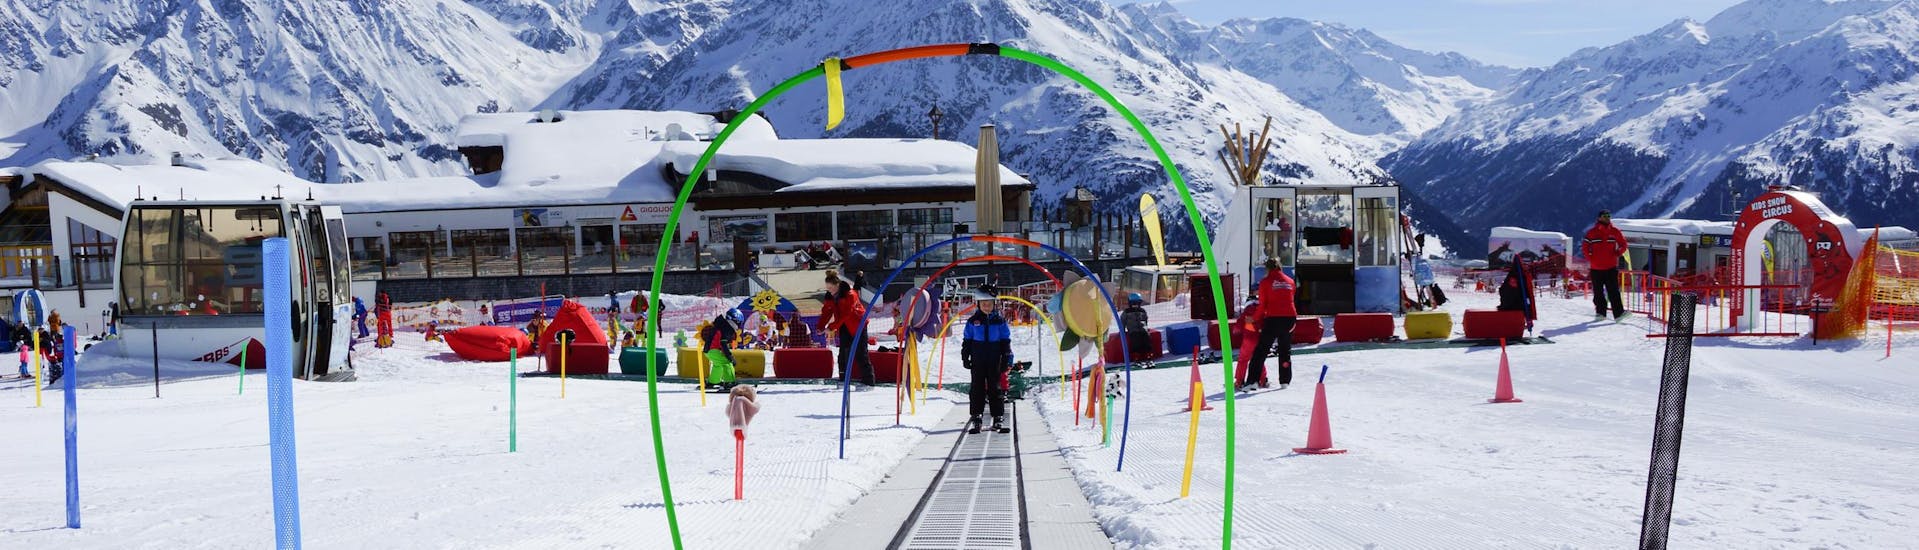 Clases de esquí para niños (4-15 años) para todos los niveles.